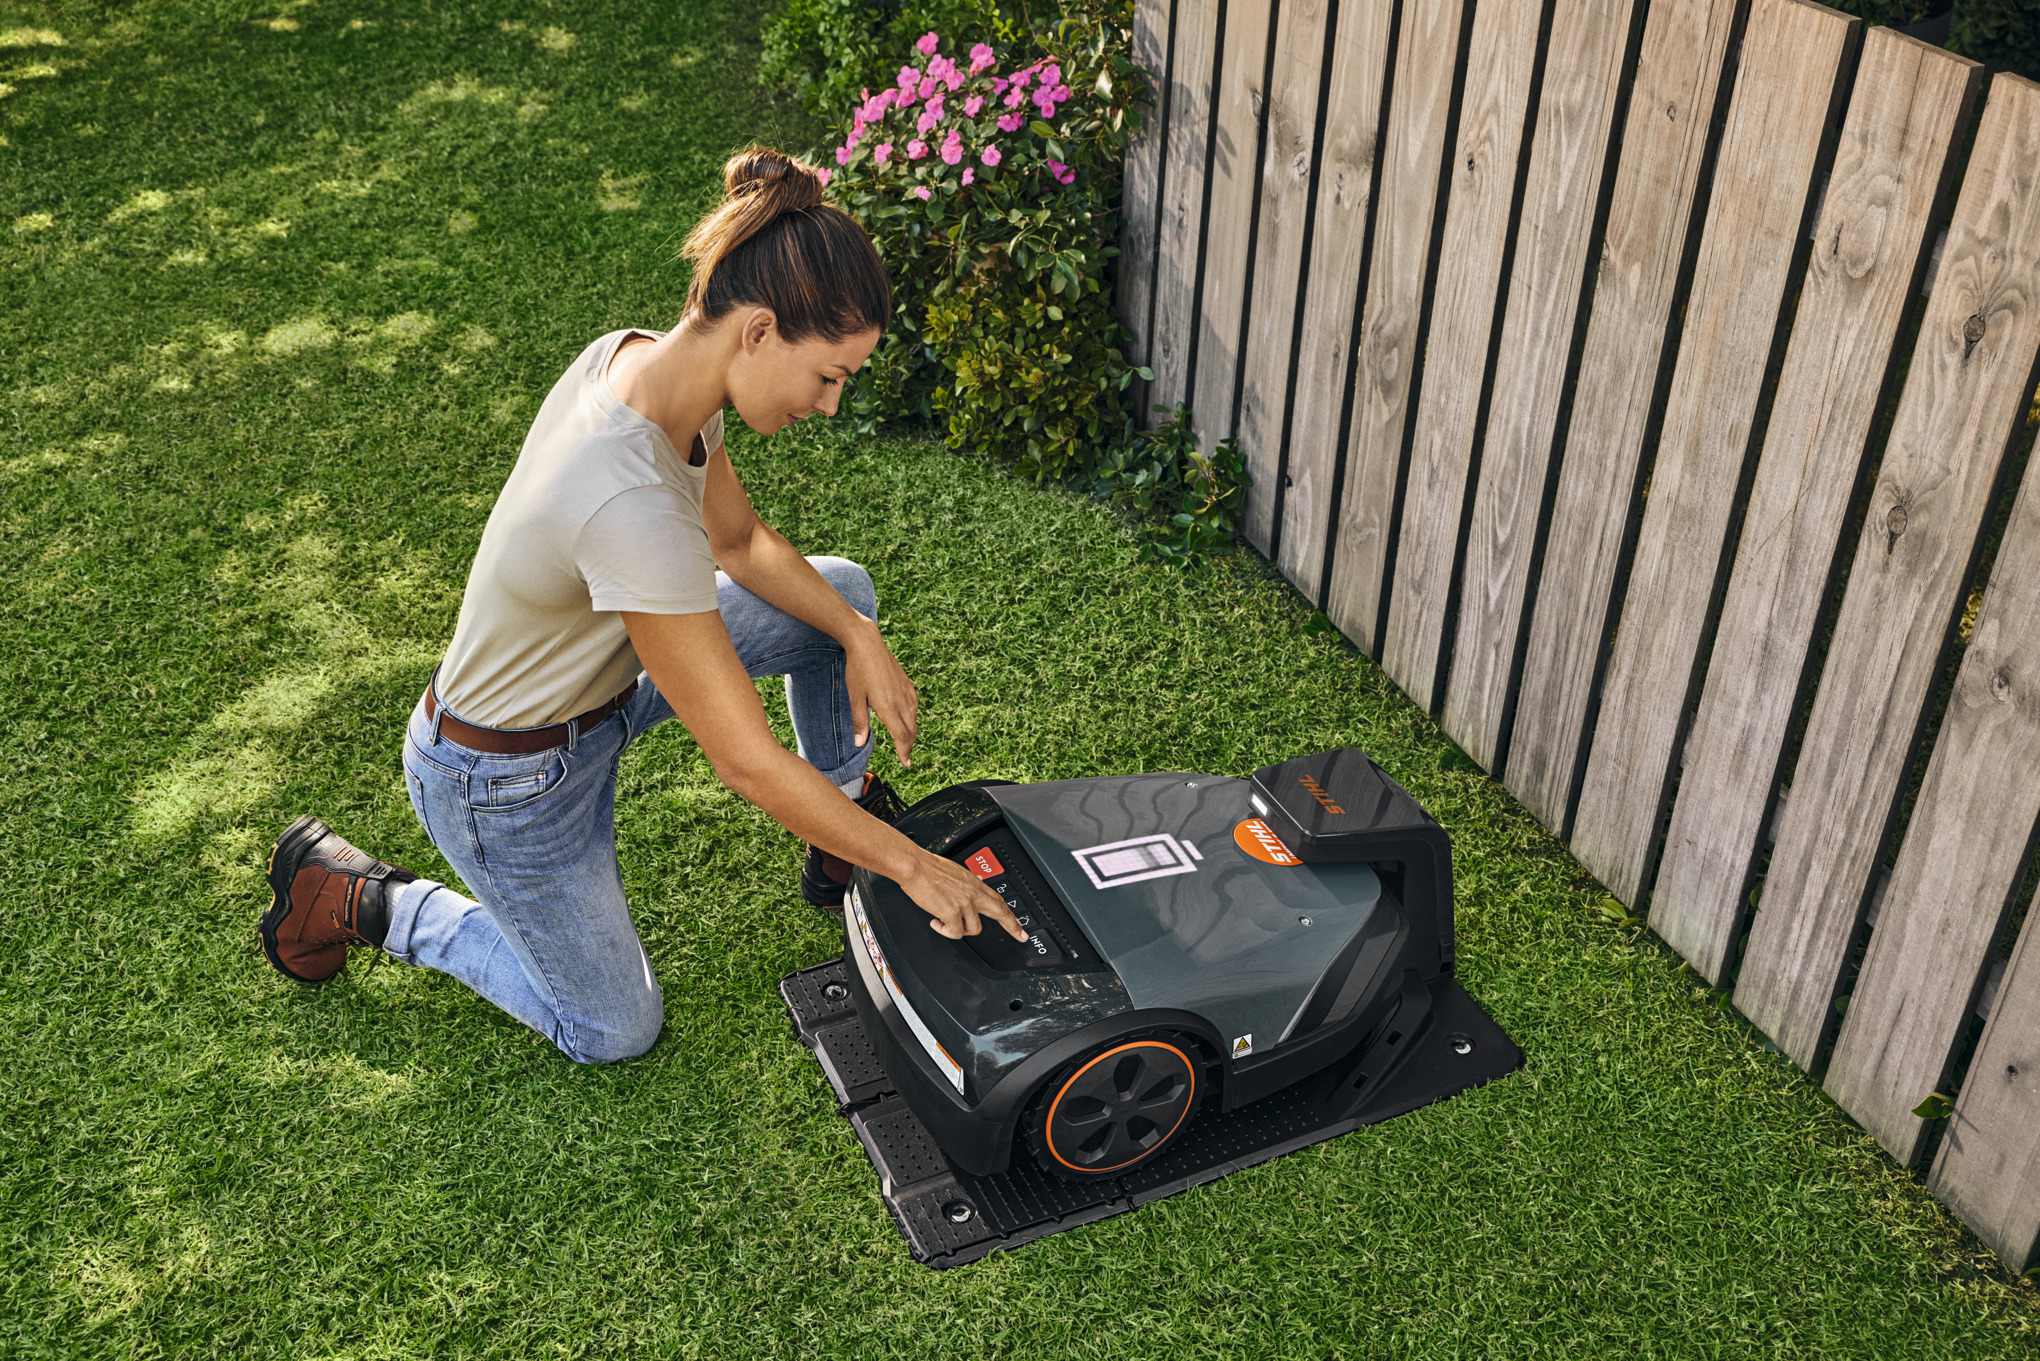 Газонокосарка-робот STIHL iMOW® на док-станції в саду, поки жінка щось налаштовує на газонокосарці-роботі.